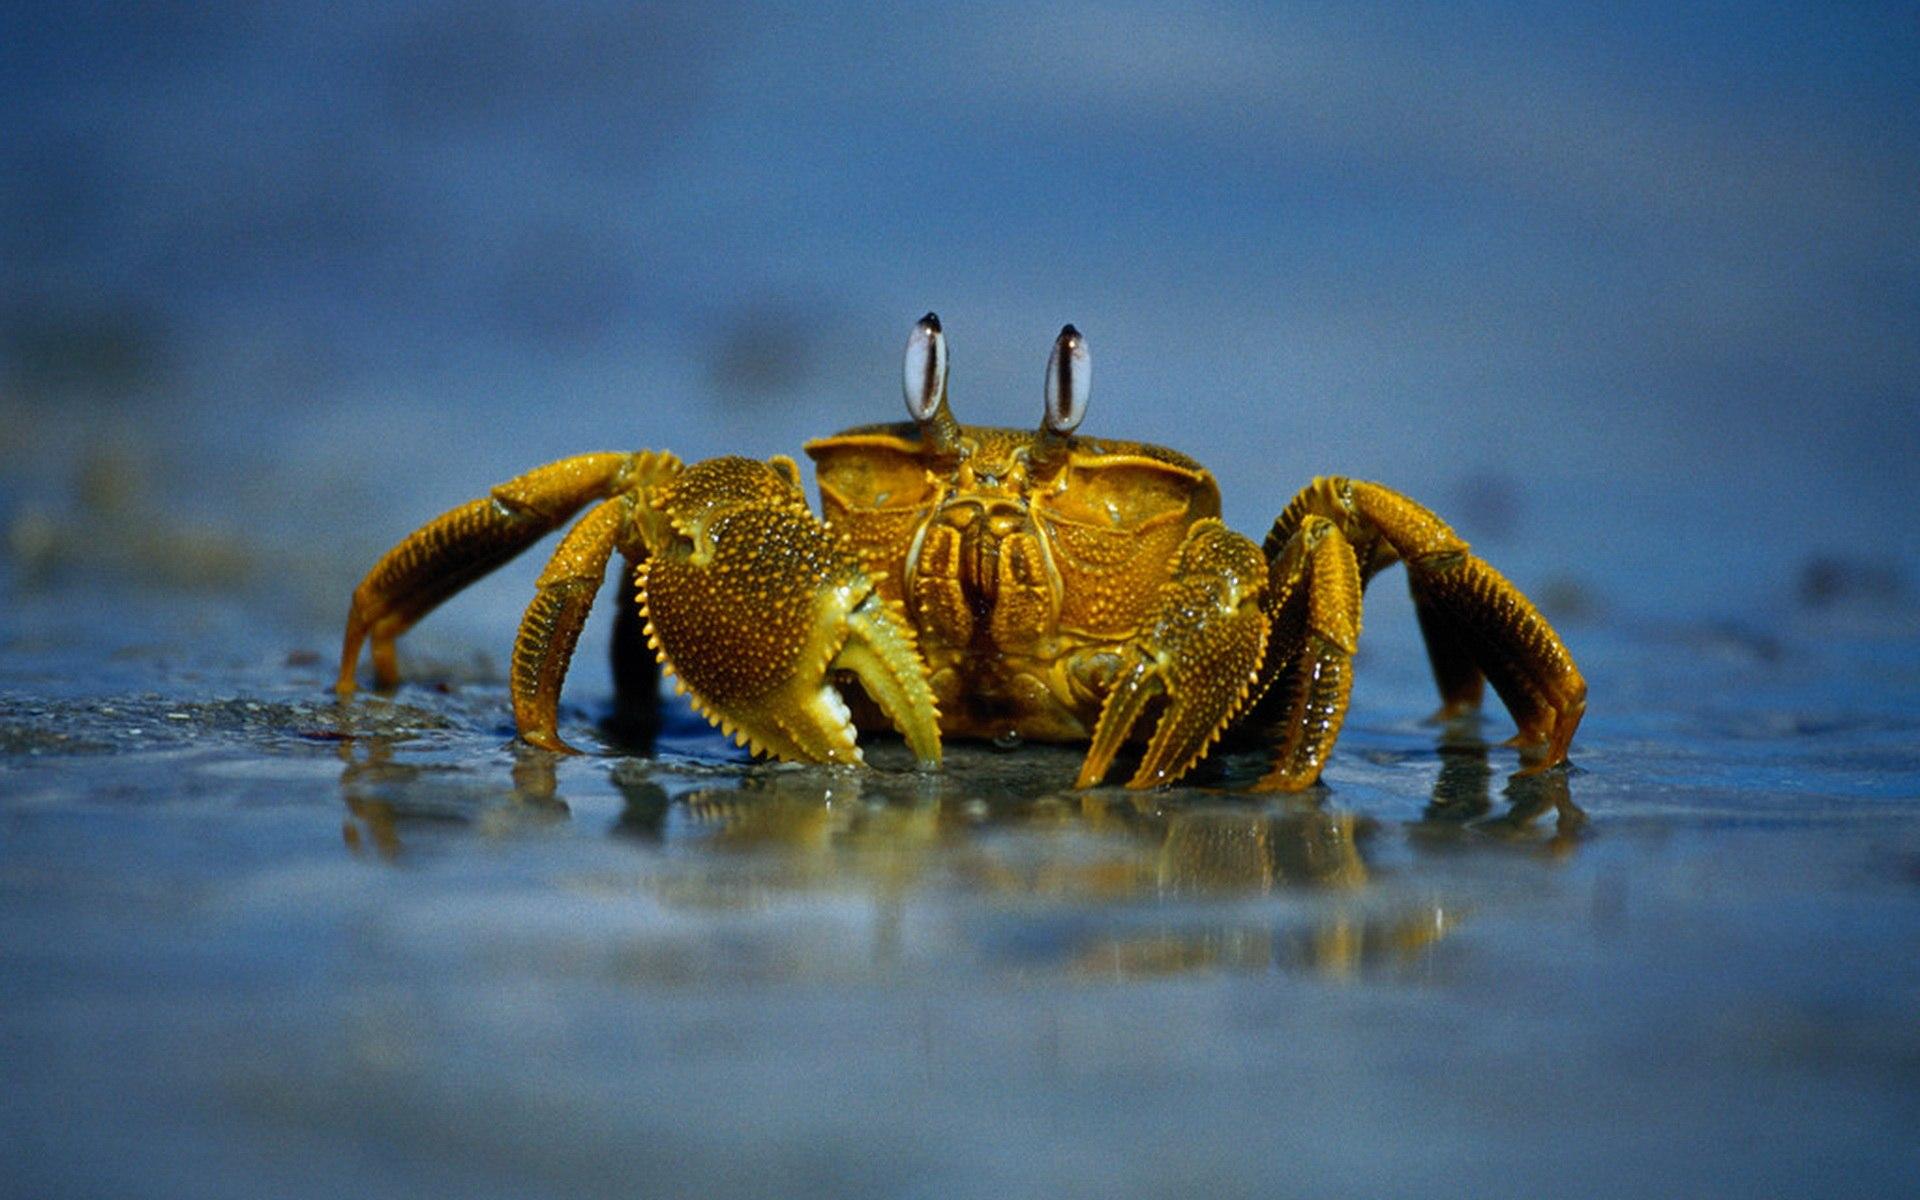 吸血鬼螃蟹 库存图片. 图片 包括有 甲壳, 异乎寻常, 沿海, 详细资料, 节肢动物, 生物, 地方性 - 107071705